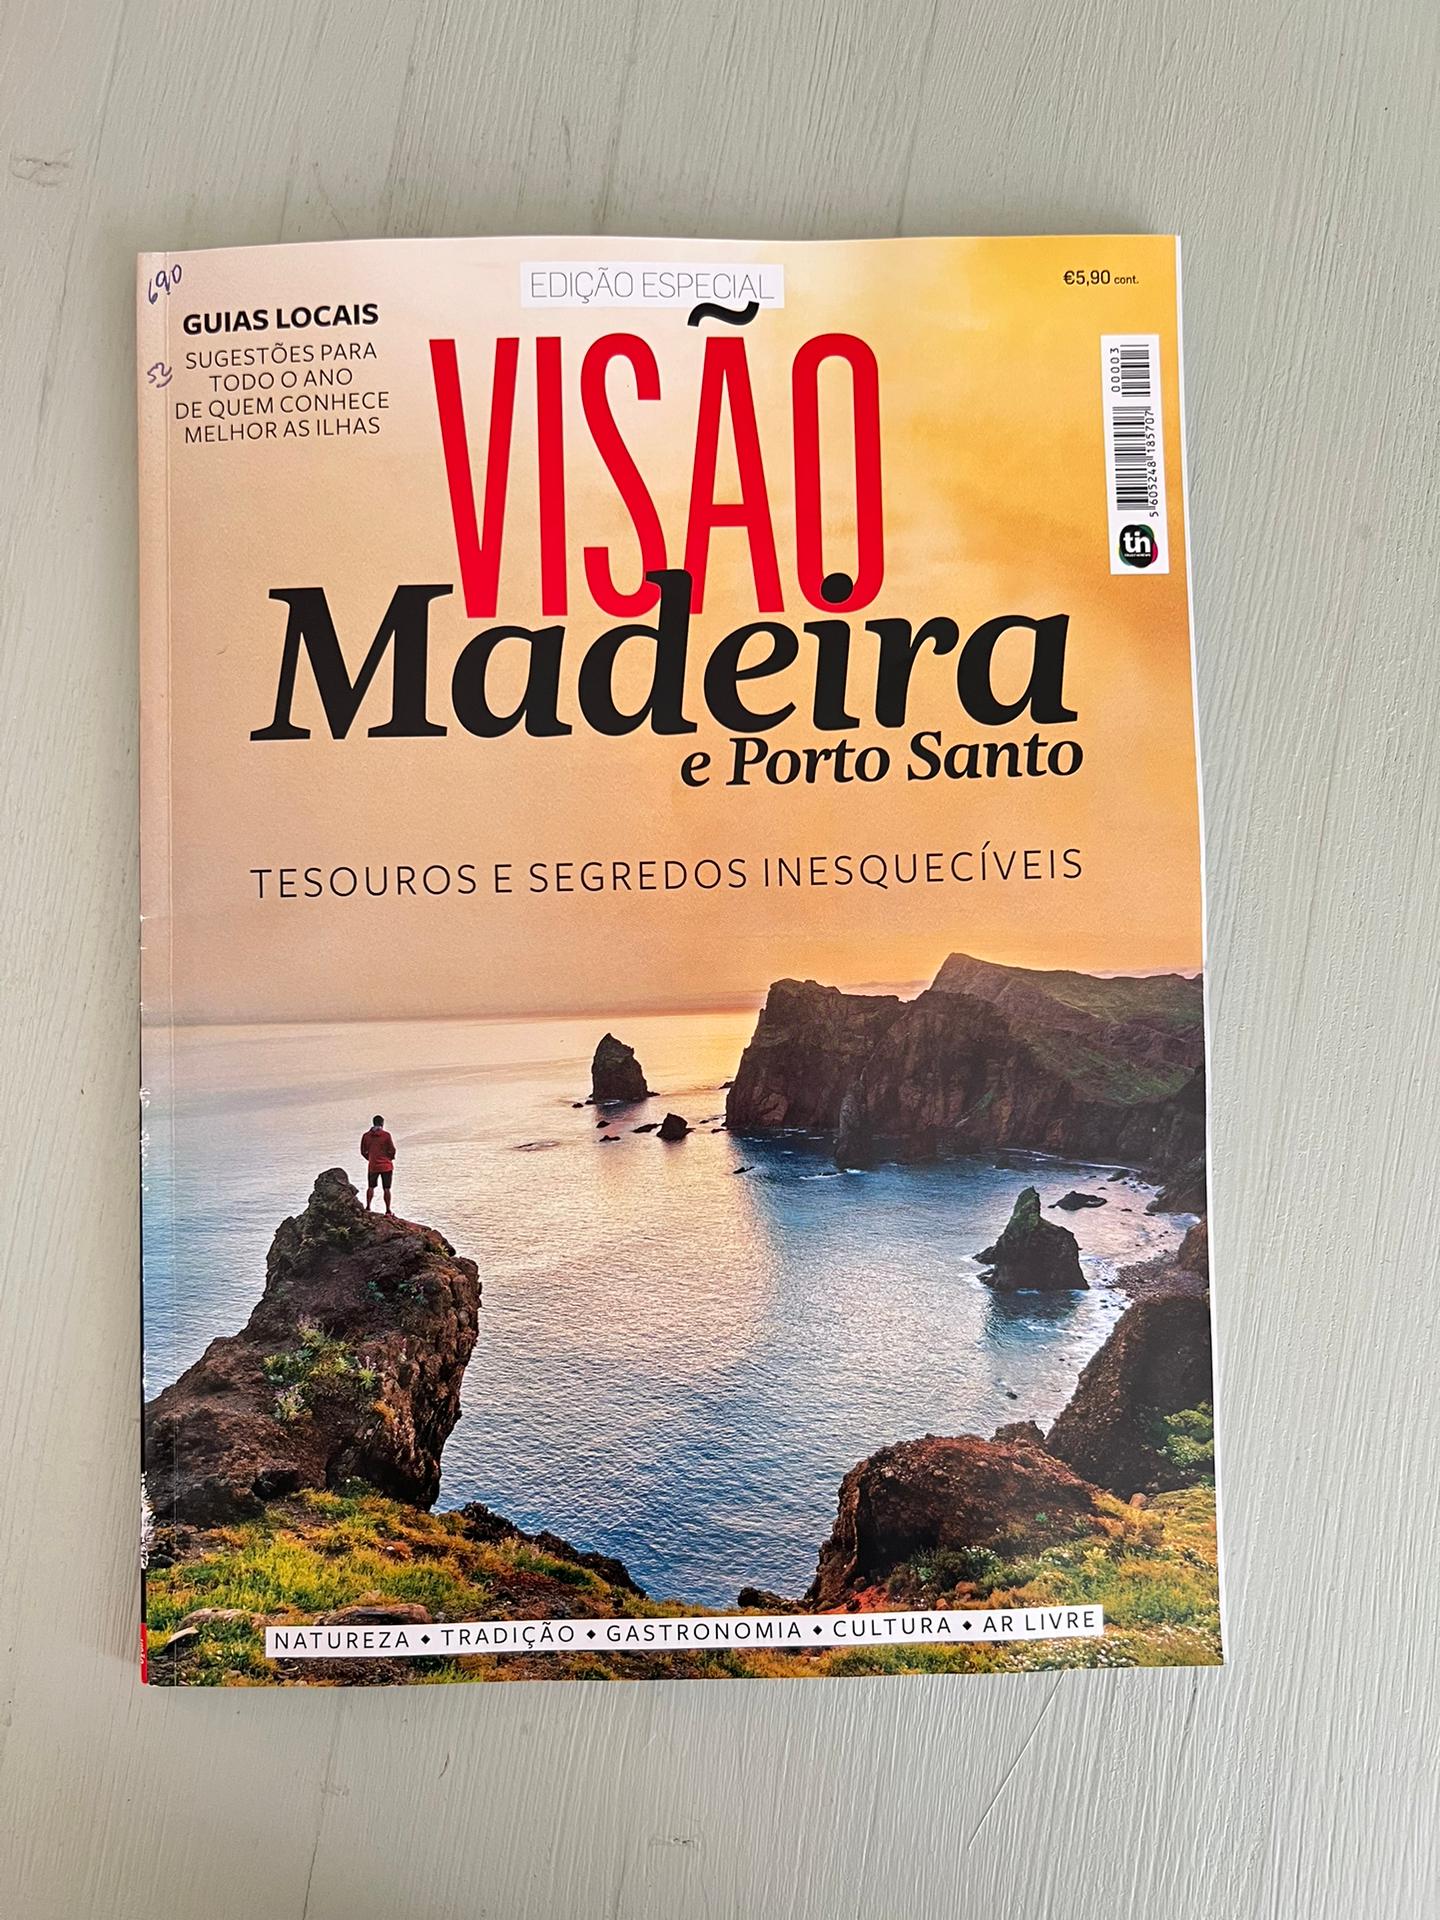 ARTICLE in Revista Visão Madeira